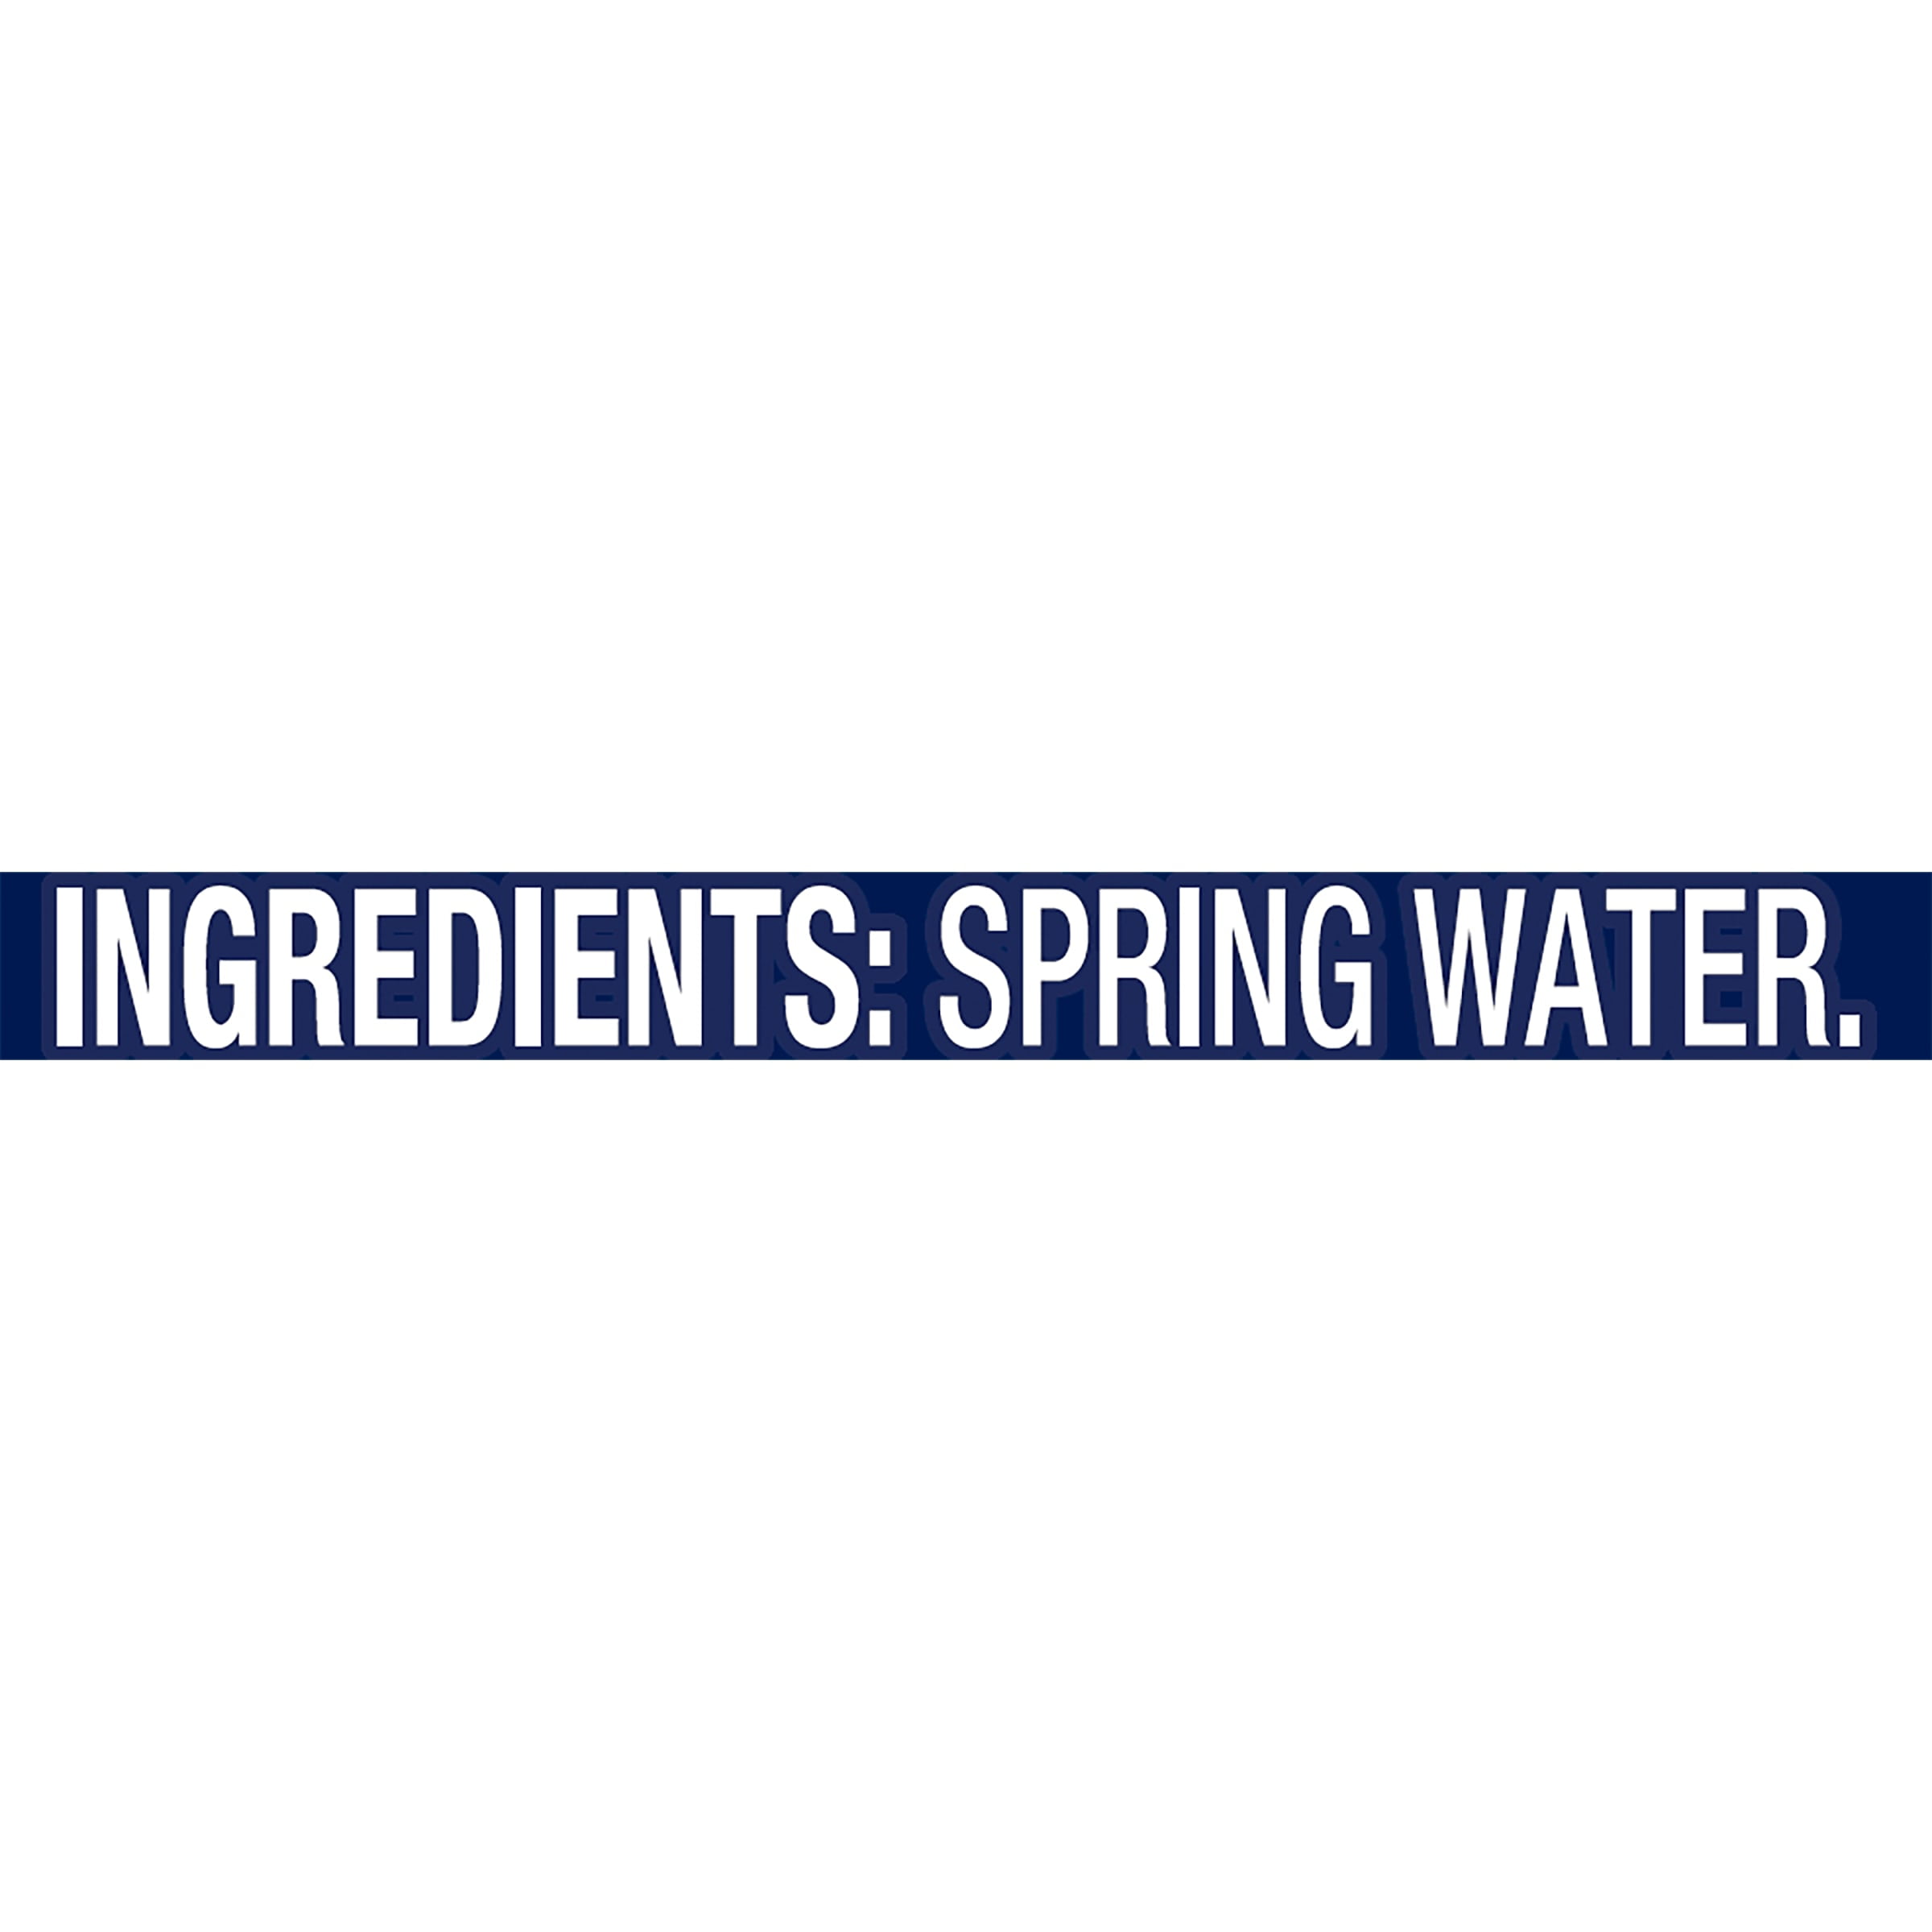 Poland Spring - Agua de manantial 100% natural de primera calidad,  pequeñas, pequeñas botellas de 8 onzas líquidas, paquete de 24